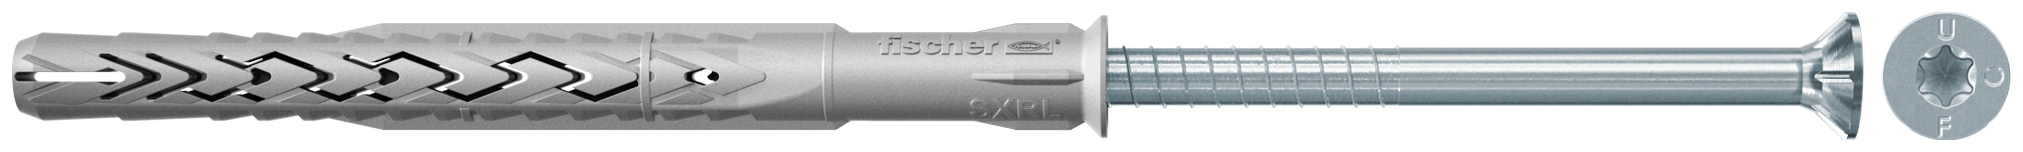 fischer Tasselli prolungati SXRL 14X260 T (1 Pz.) Tassello prolungato in nylon con marcatura CE con vite premontata T.S.P. impronta torx.